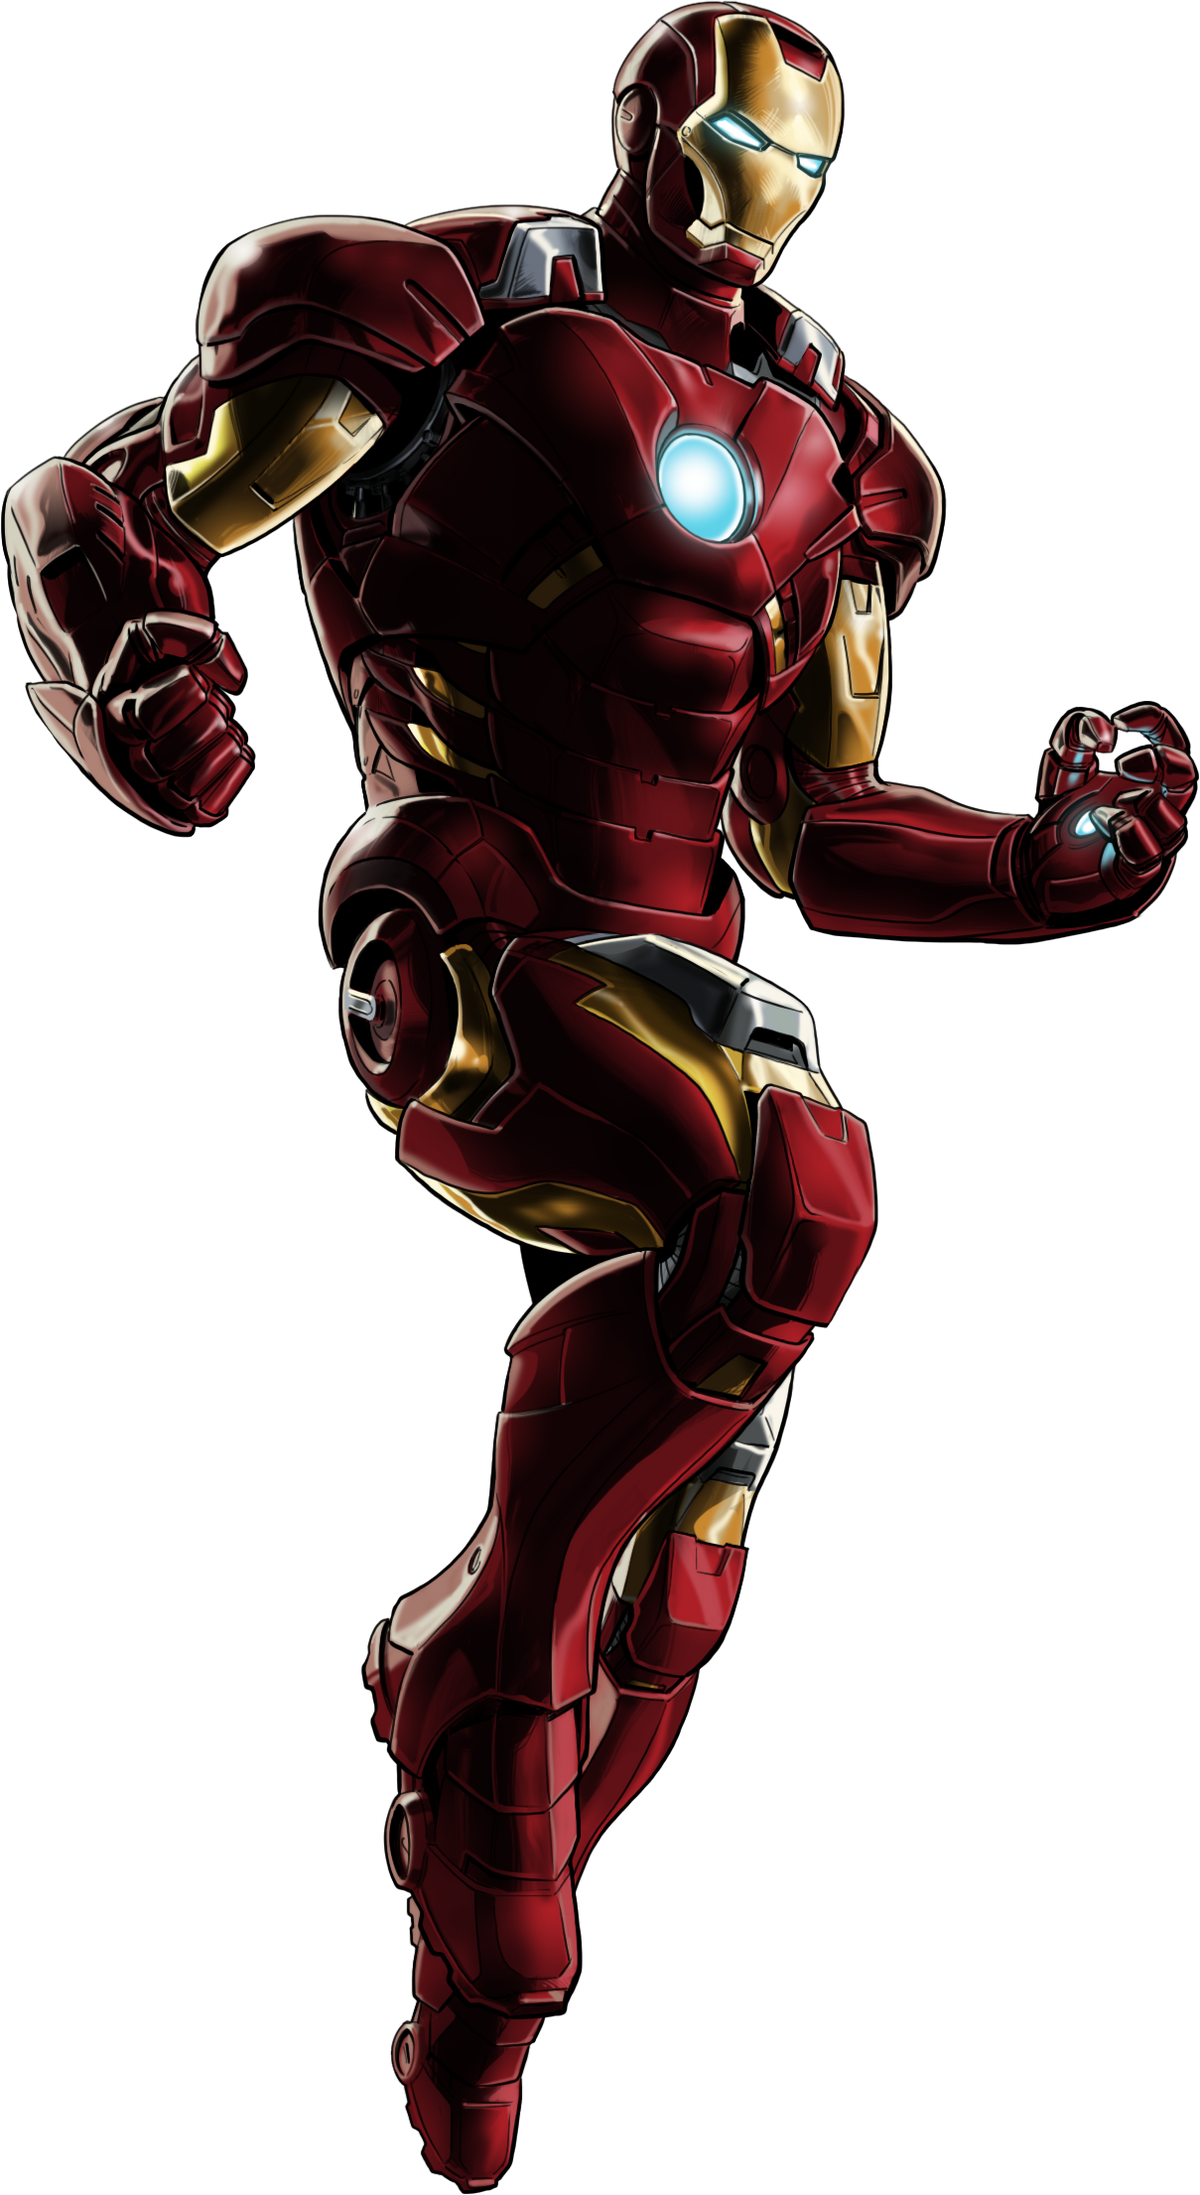 Iron Man (2008) - Quotes - IMDb